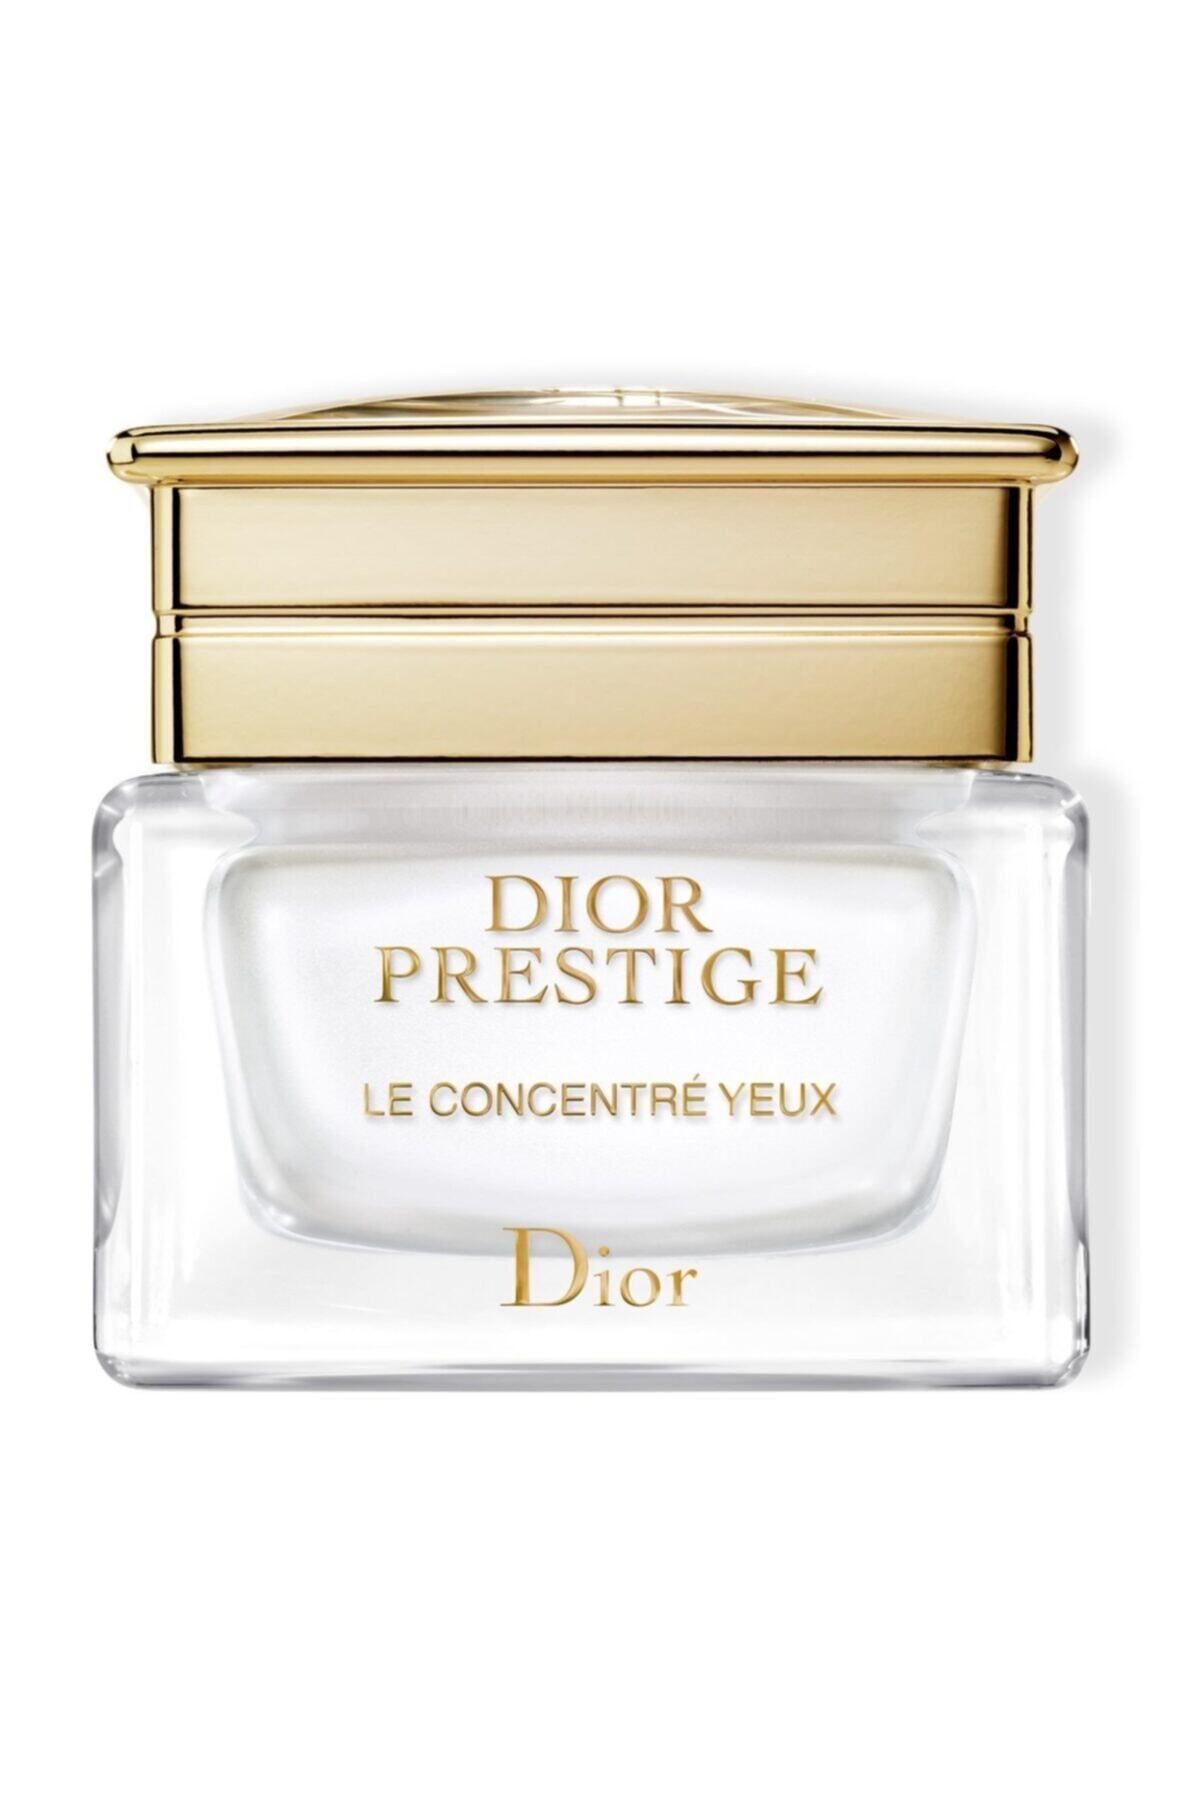 Dior PRESTİGE LE CONCENTRÉ YEUX - ANTİ-FİNE LİNE EYE CONTOUR CARE 15 ML DEMBA1407